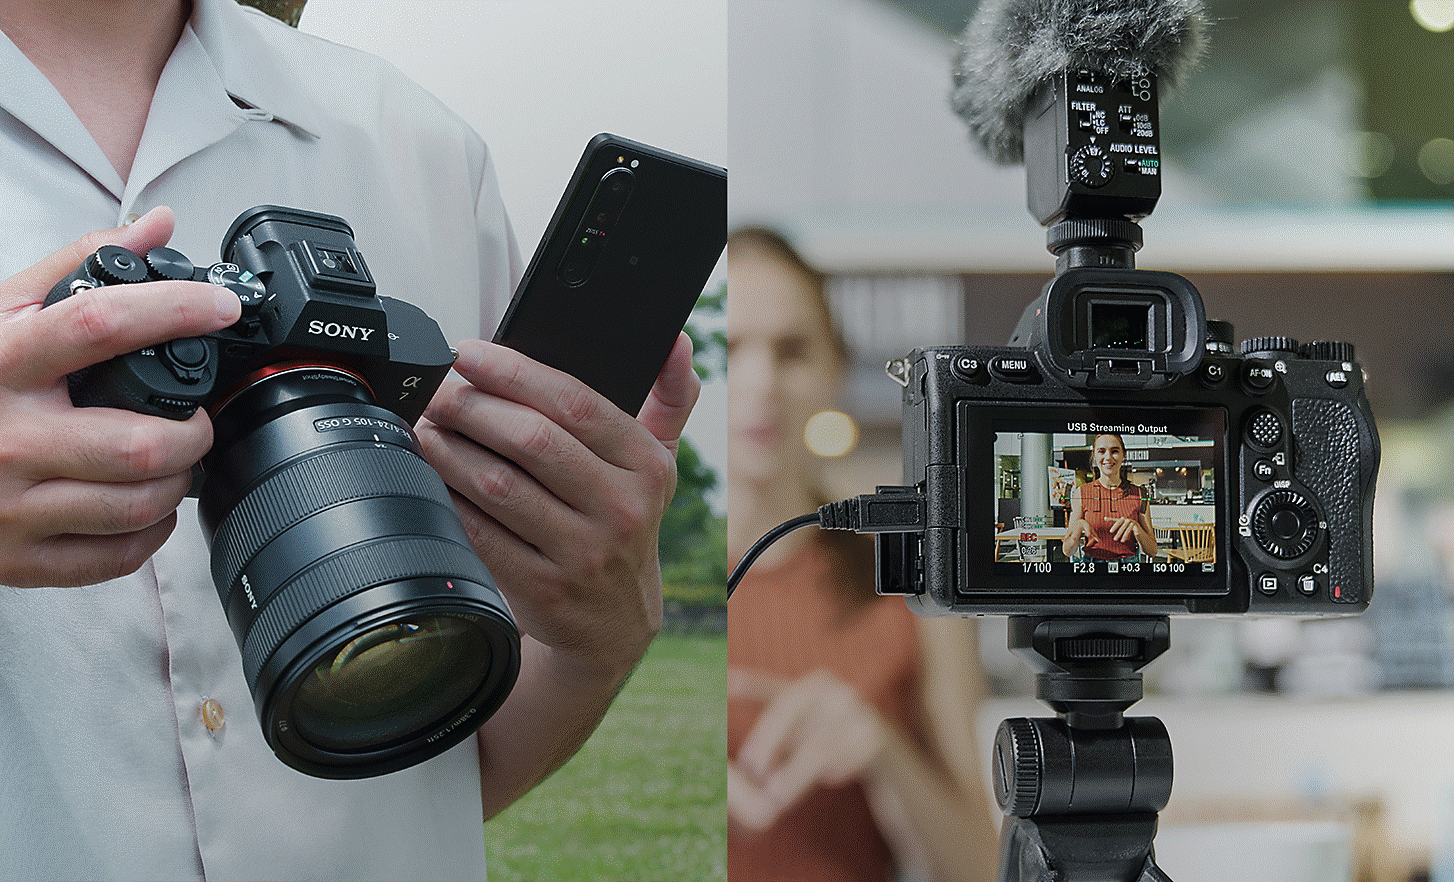 Vľavo: Osoba s fotoaparátom Alpha 7 IV a smartfónom zdieľajúca fotografie alebo videozáznamy okamžite po ich nasnímaní; Vpravo: Osoba vysielajúca živé streamovanie fotoaparátom Alpha 7 IV